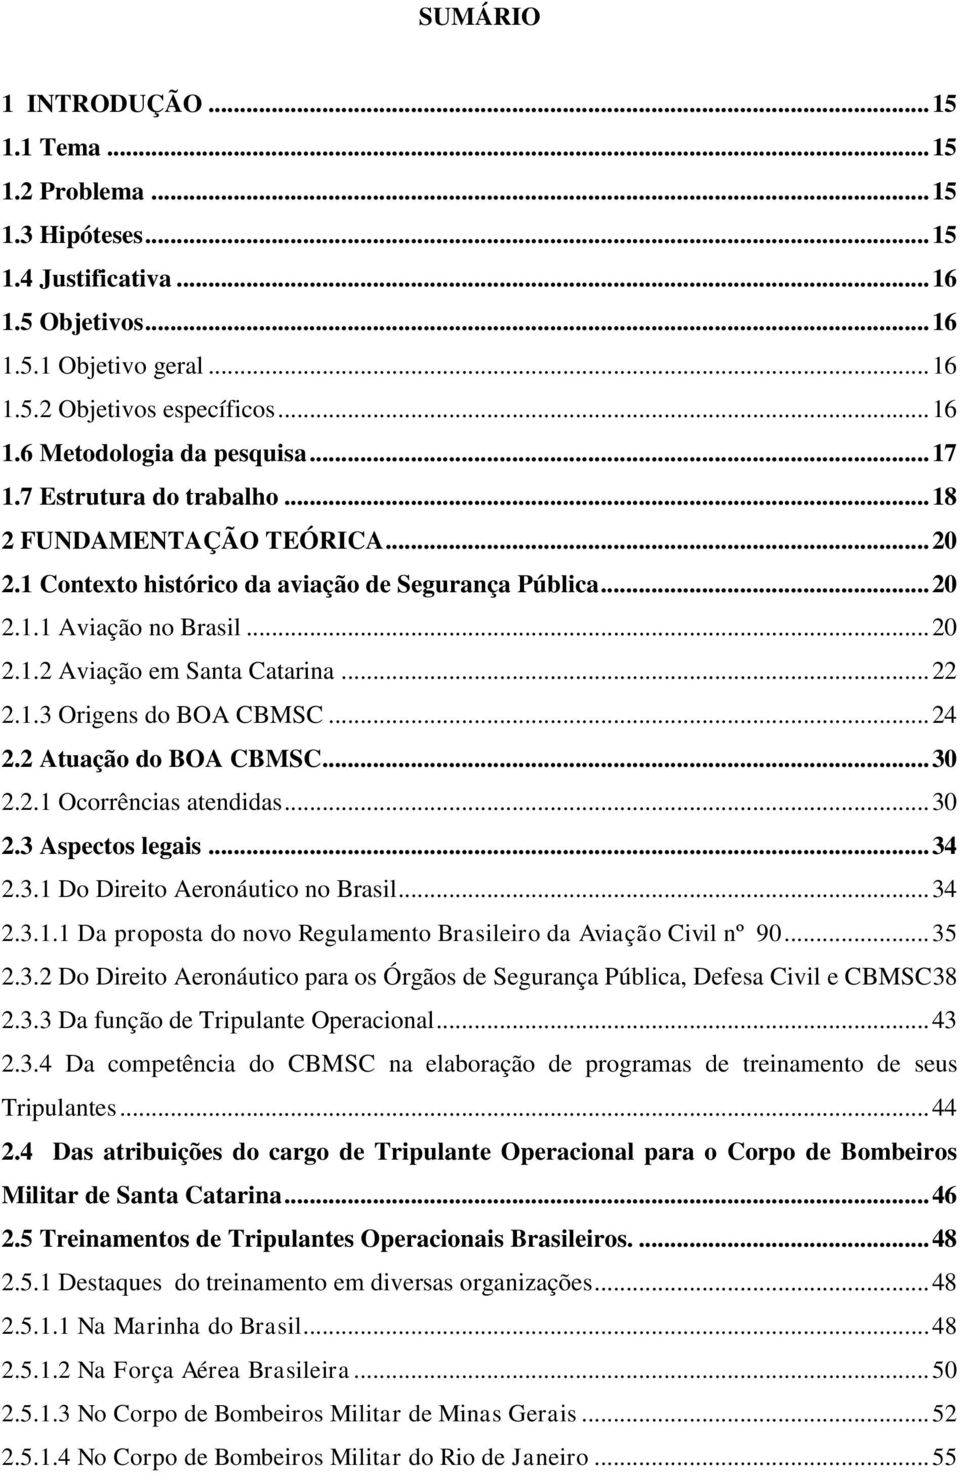 1.3 Origens do BOA CBMSC... 24 2.2 Atuação do BOA CBMSC... 30 2.2.1 Ocorrências atendidas... 30 2.3 Aspectos legais... 34 2.3.1 Do Direito Aeronáutico no Brasil... 34 2.3.1.1 Da proposta do novo Regulamento Brasileiro da Aviação Civil nº 90.